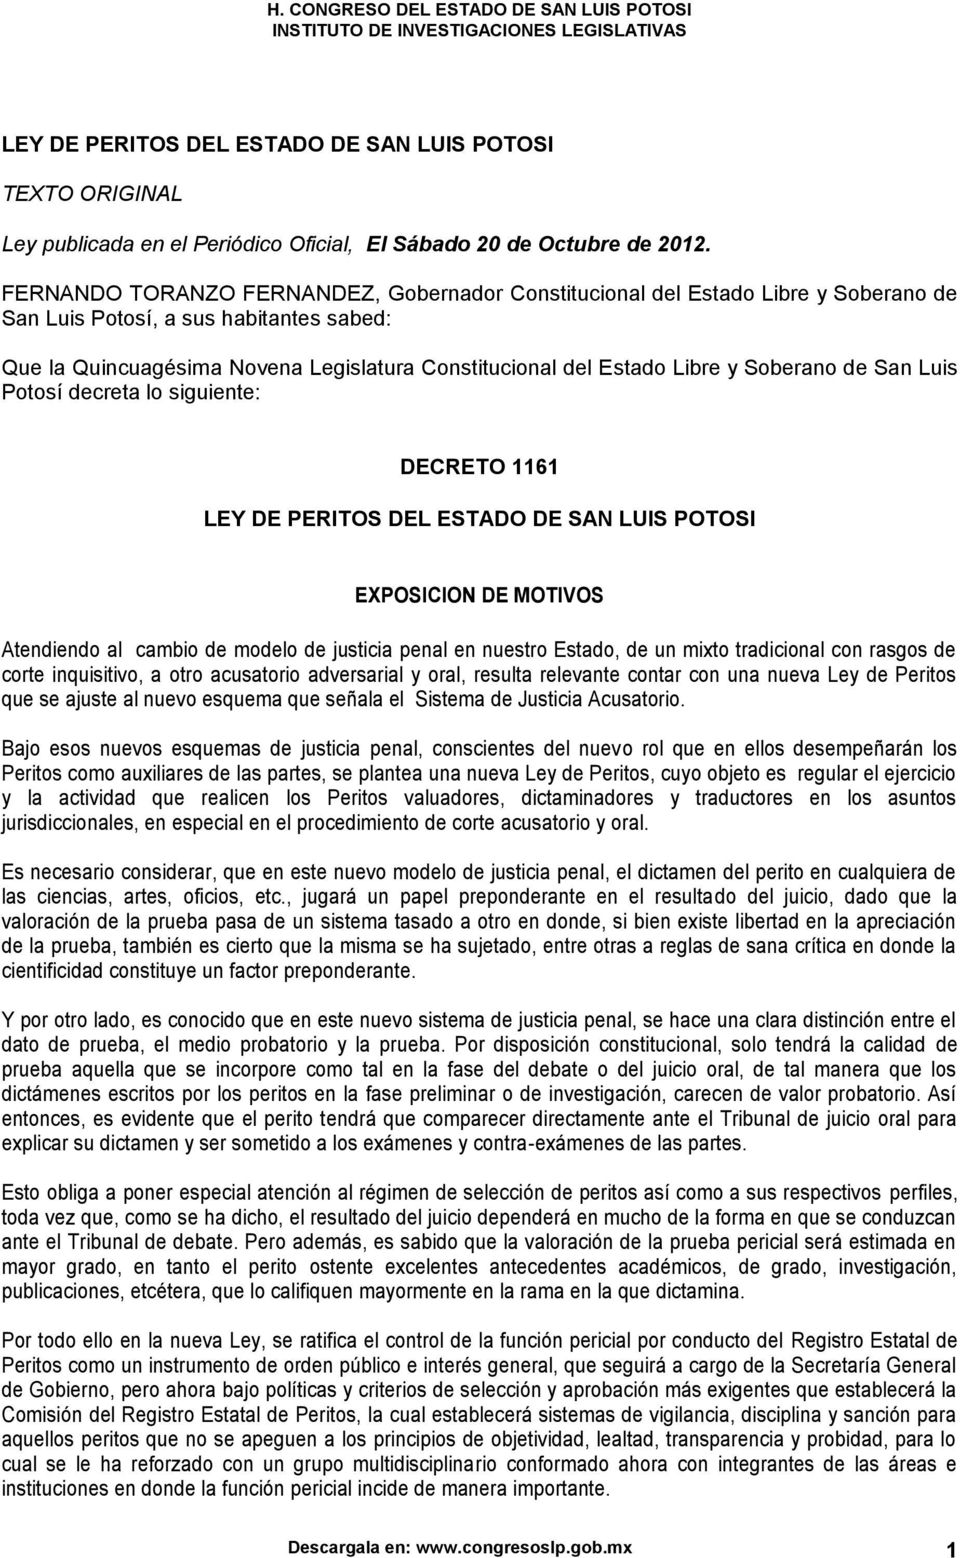 Soberano de San Luis Potosí decreta lo siguiente: DECRETO 1161 LEY DE PERITOS DEL ESTADO DE SAN LUIS POTOSI EXPOSICION DE MOTIVOS Atendiendo al cambio de modelo de justicia penal en nuestro Estado,